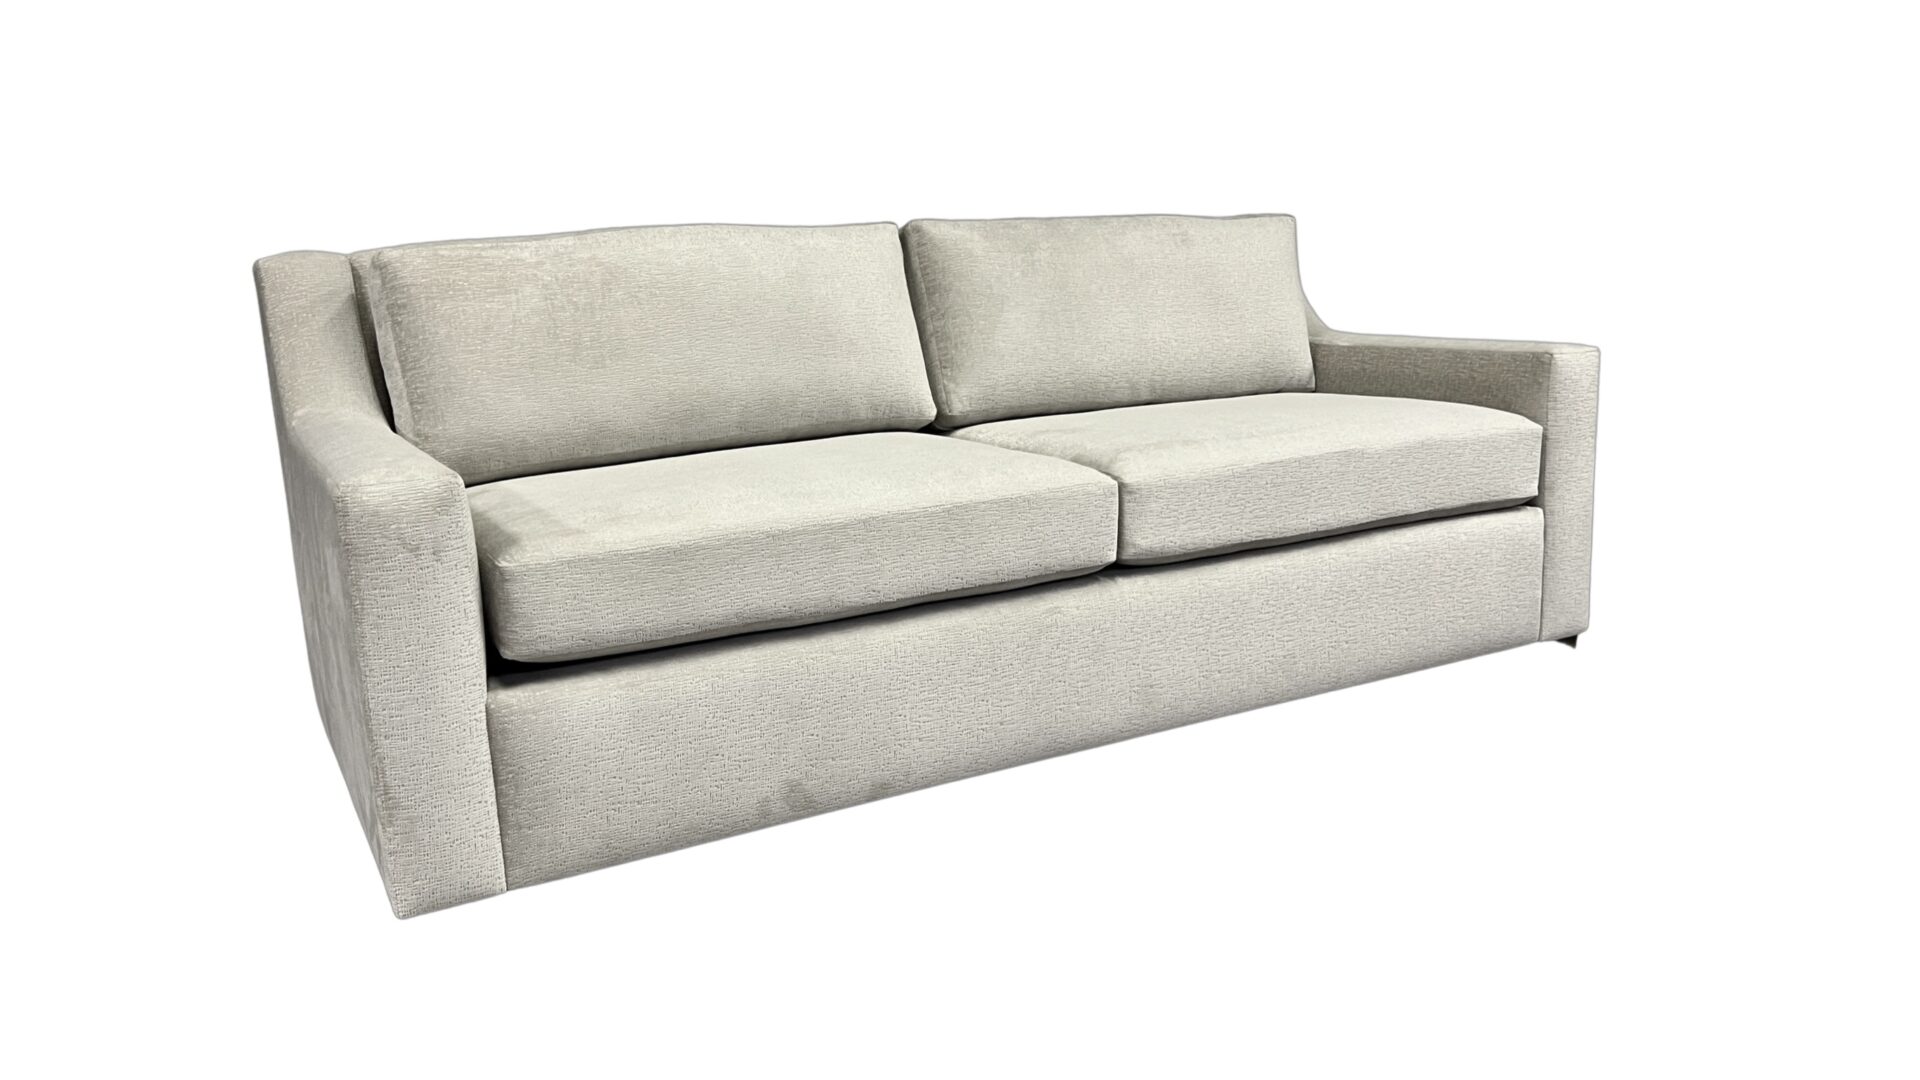 Fallyn-sofa-blend-home-furnishings-1